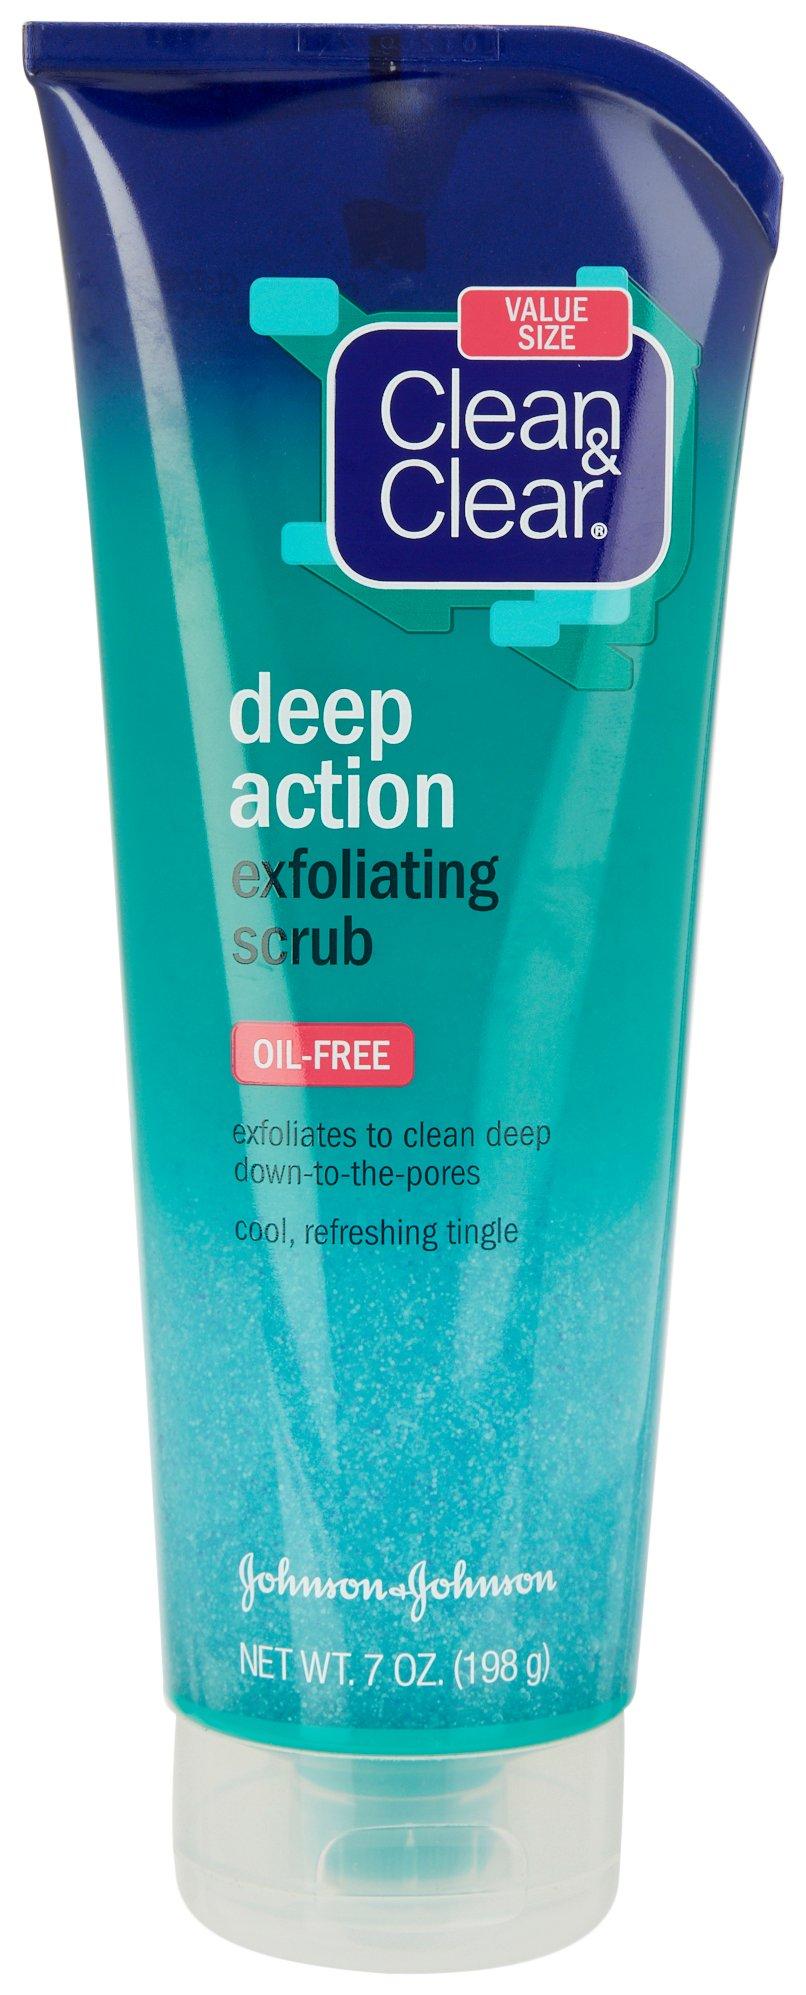 Clean & Clear Deep Action 7 Oz. Exfoliating Scrub